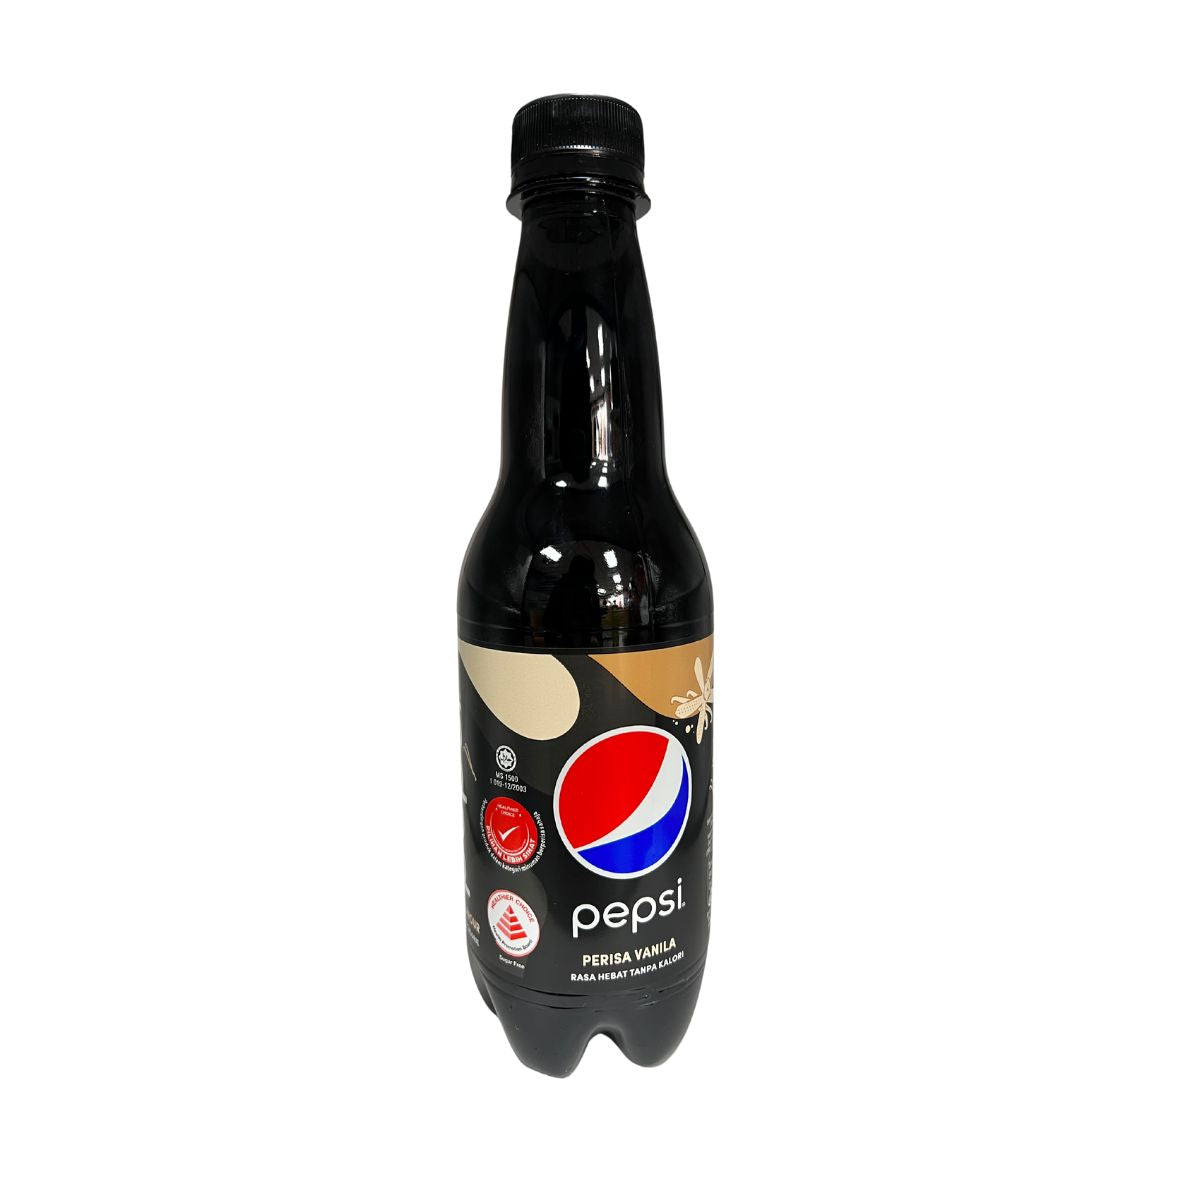 Pepsi Perisa Vanilla